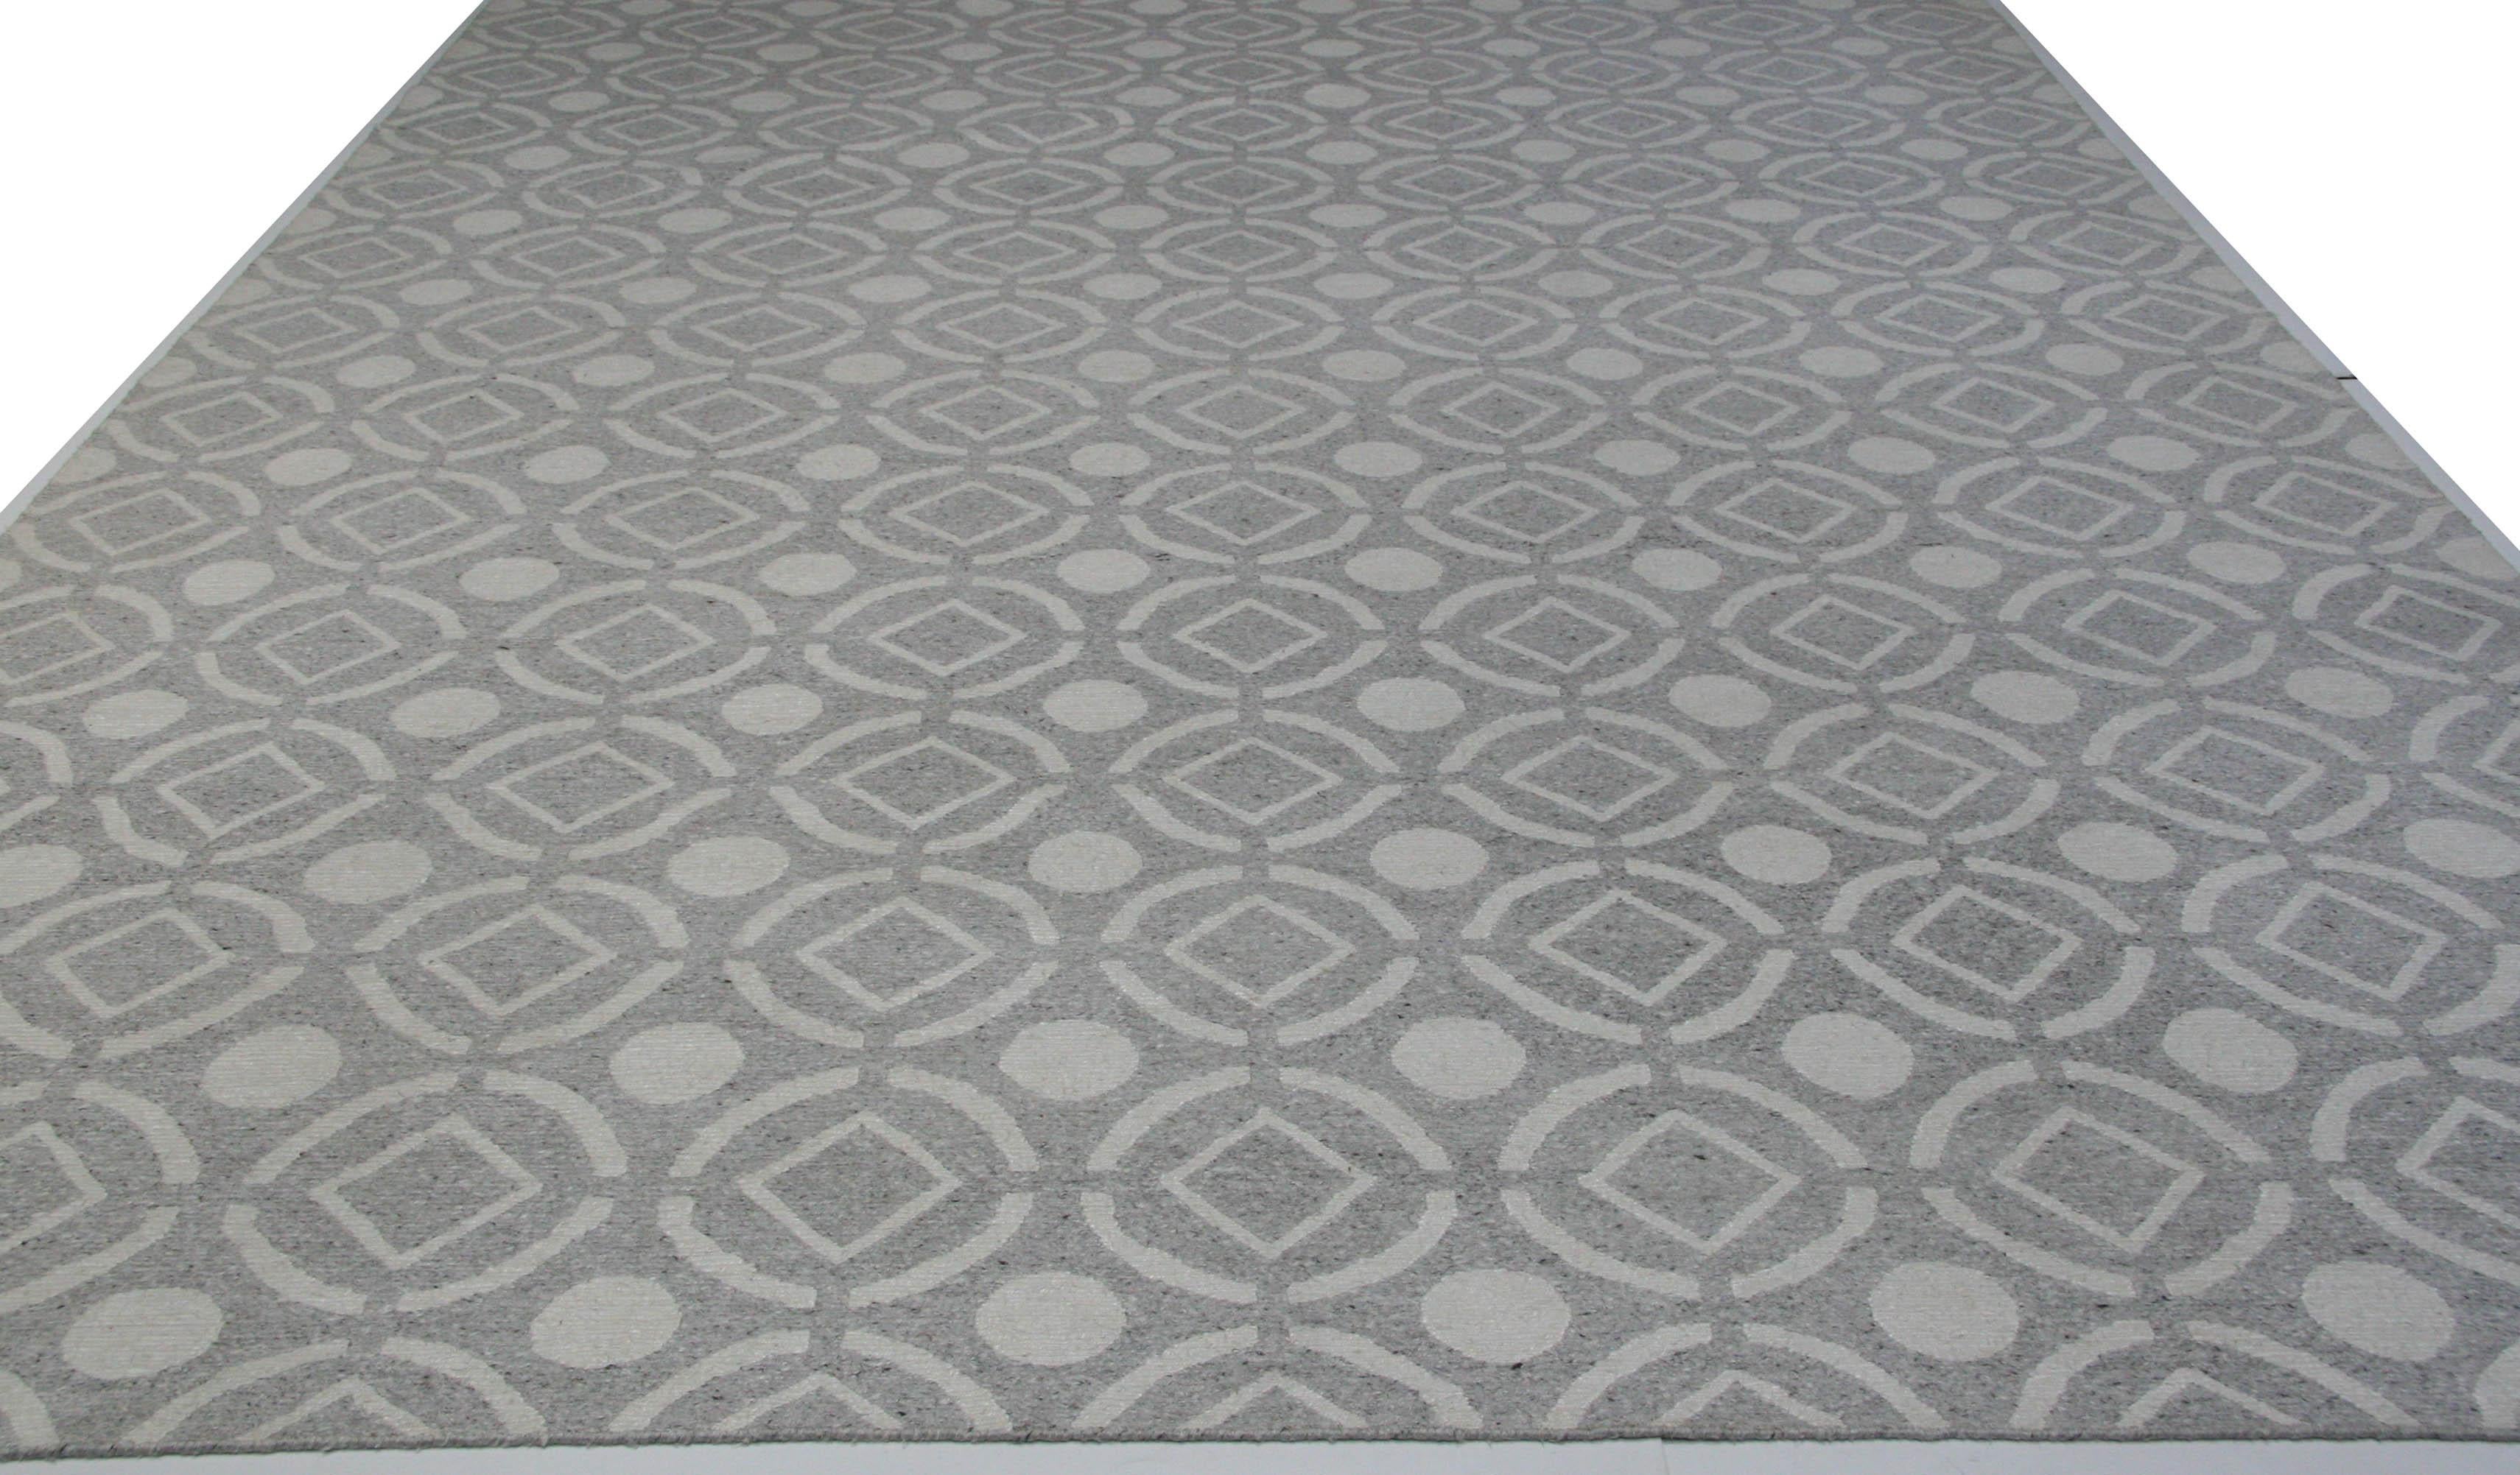 Grau und Elfenbein verbinden sich zu einem Muster, das an einen kühlen Kachelboden erinnert. Die Mischung aus Wolle und Viskose sorgt für Strapazierfähigkeit und Komfort unter den Füßen. Ein großartiger Teppich für ein modernes Zuhause oder Büro.